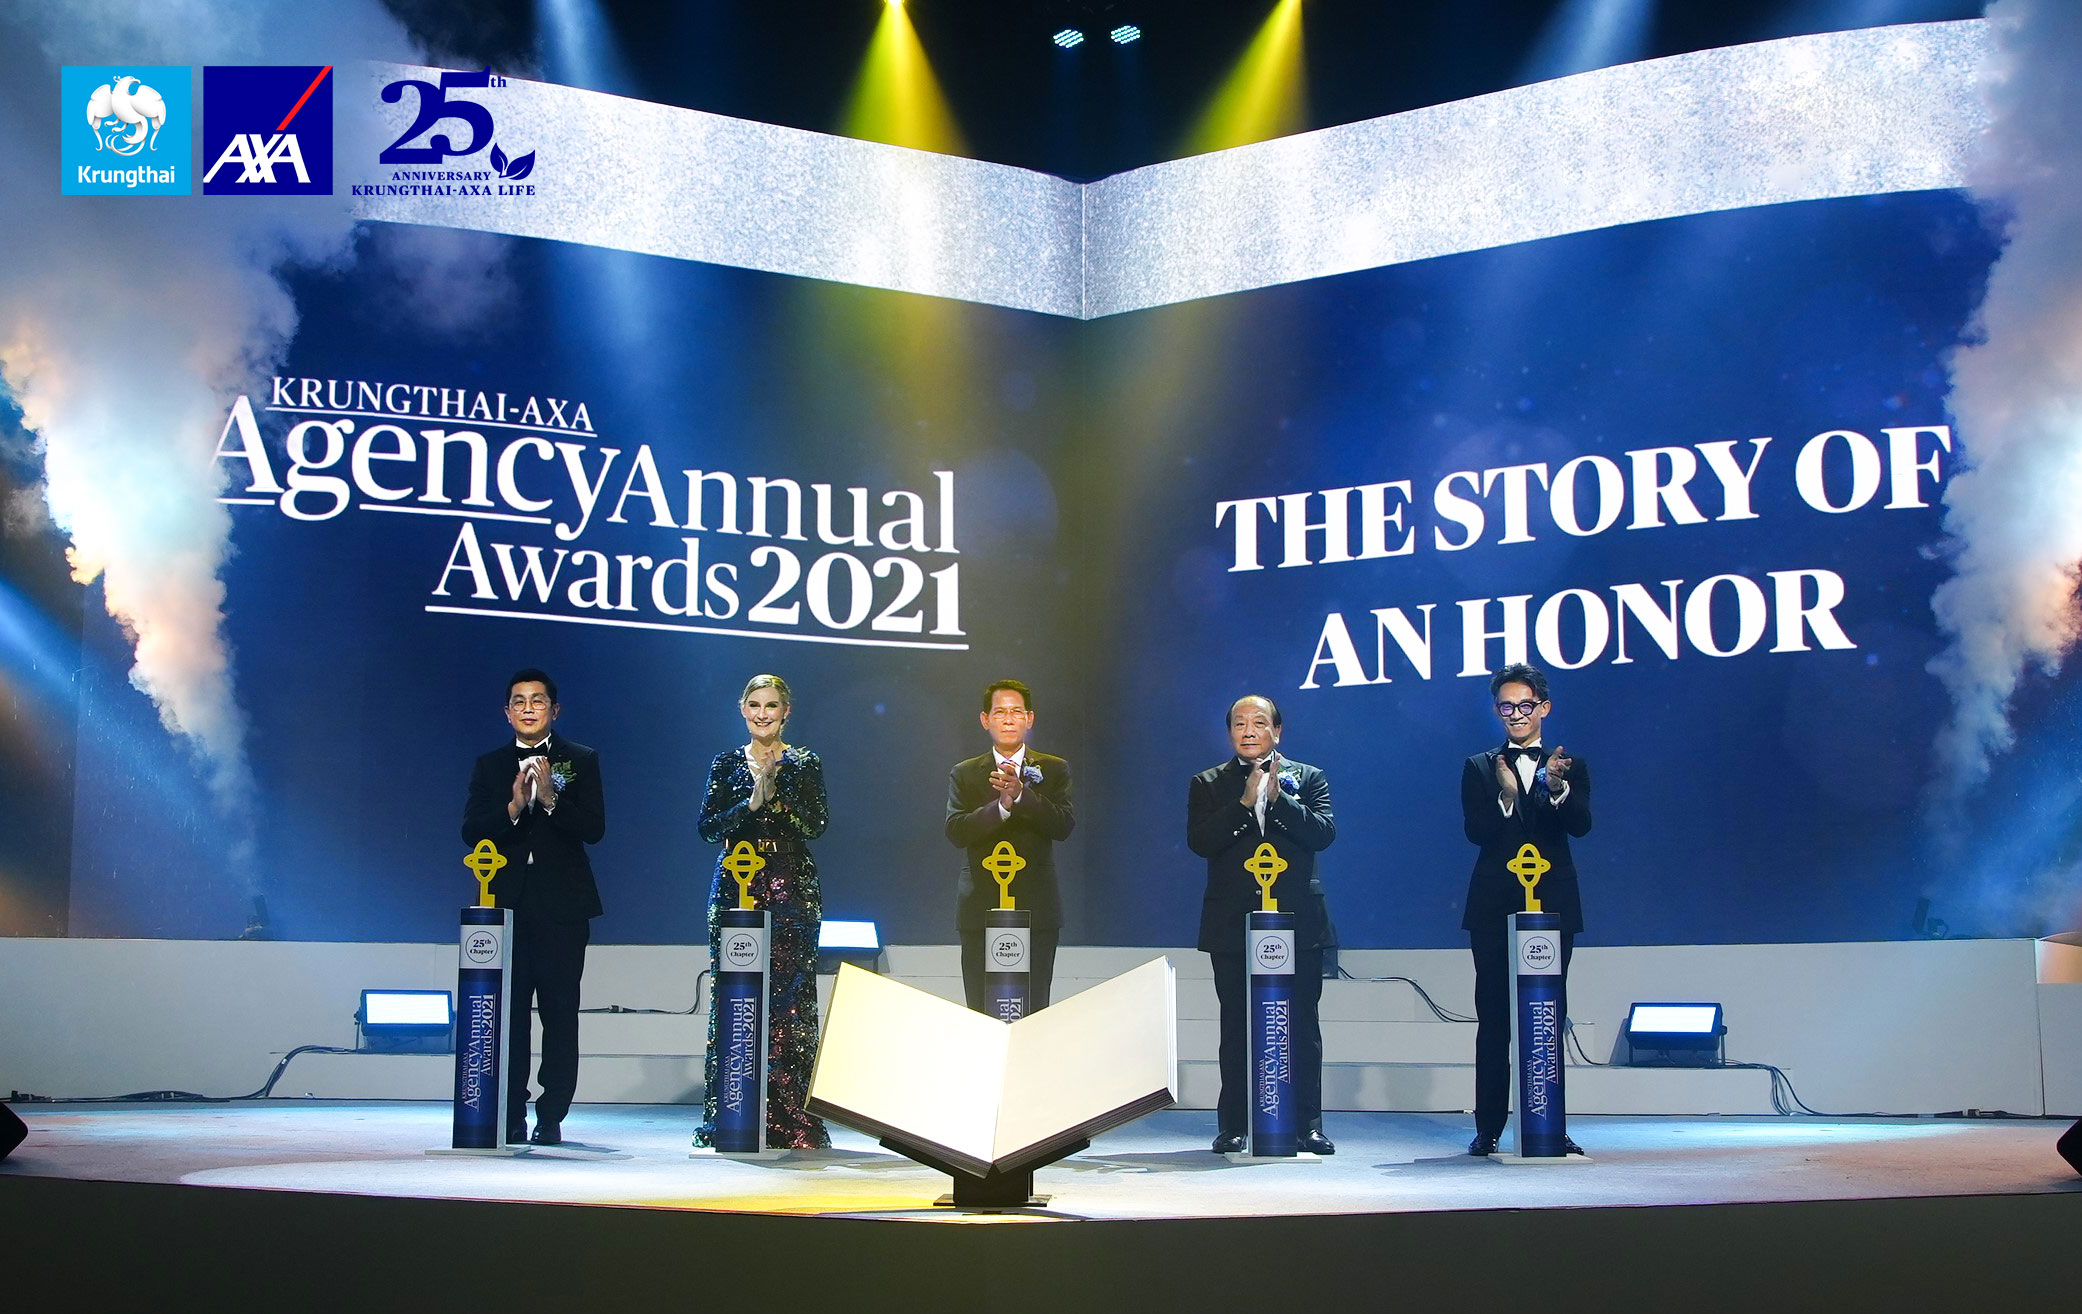 กรุงไทย–แอกซ่า ประกันชีวิต มอบรางวัลเกียรติยศนักขายประจำปี Krungthai-AXA Agency Annual Award 2021